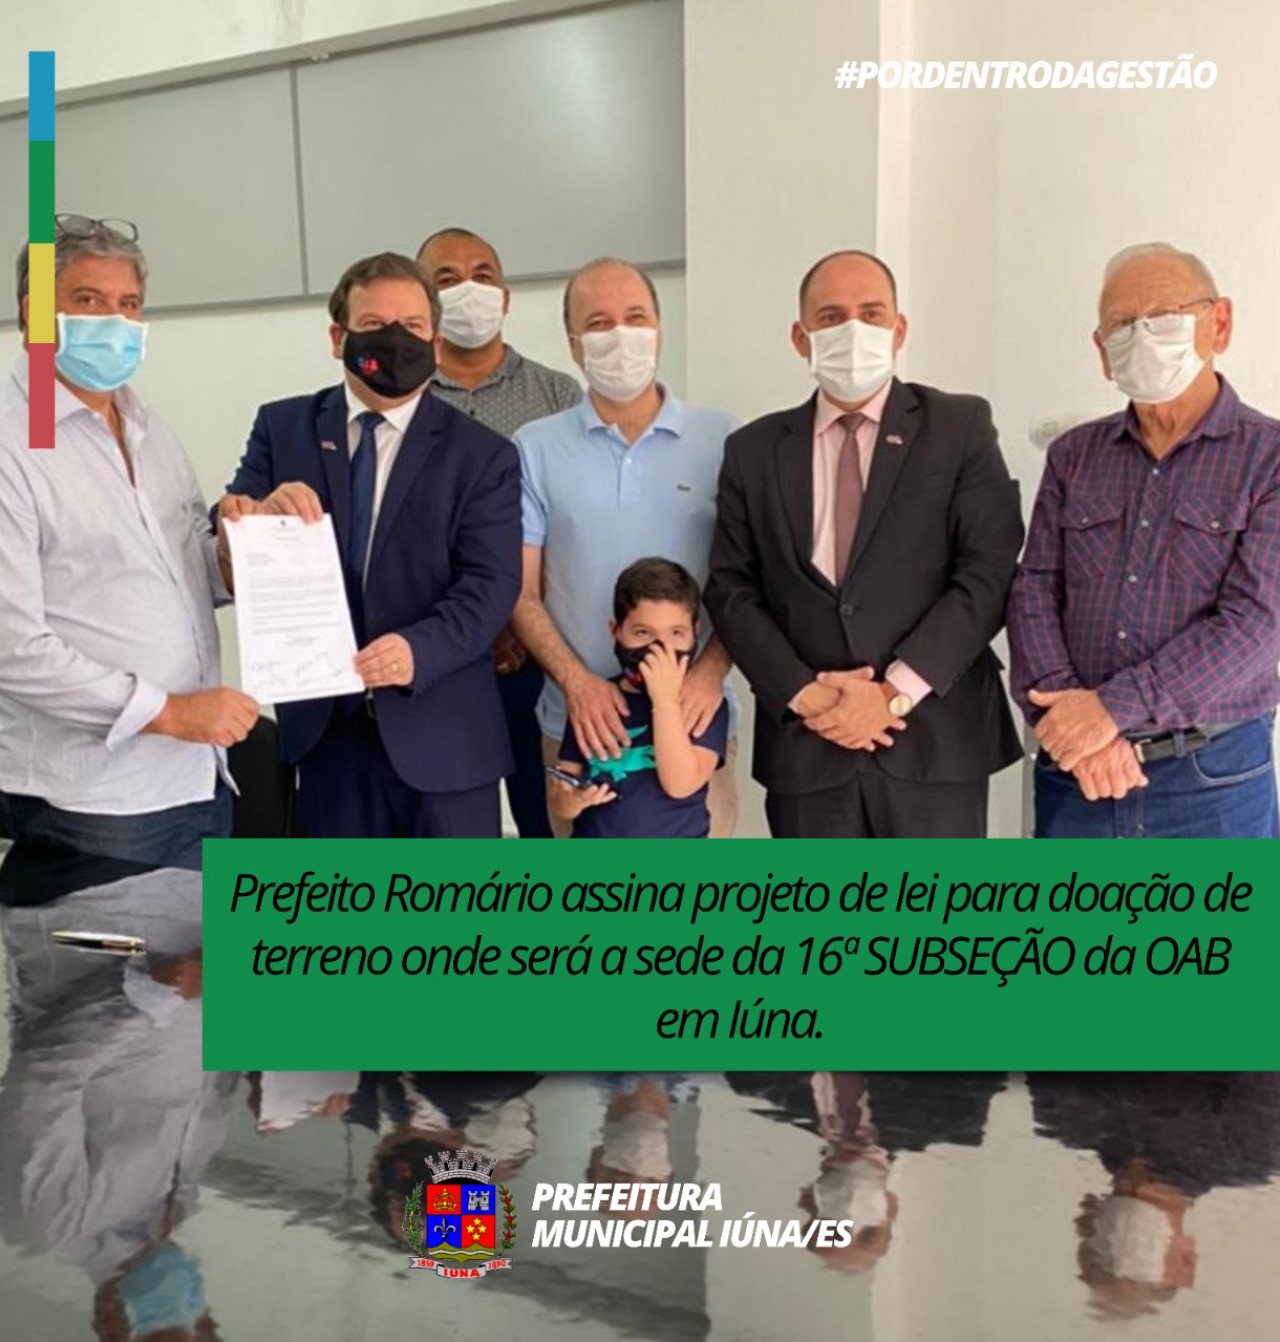 Prefeito Romário assina projeto de lei para doação de terreno onde será a sede da 16ª SUBSEÇÃO da OAB em Iúna.